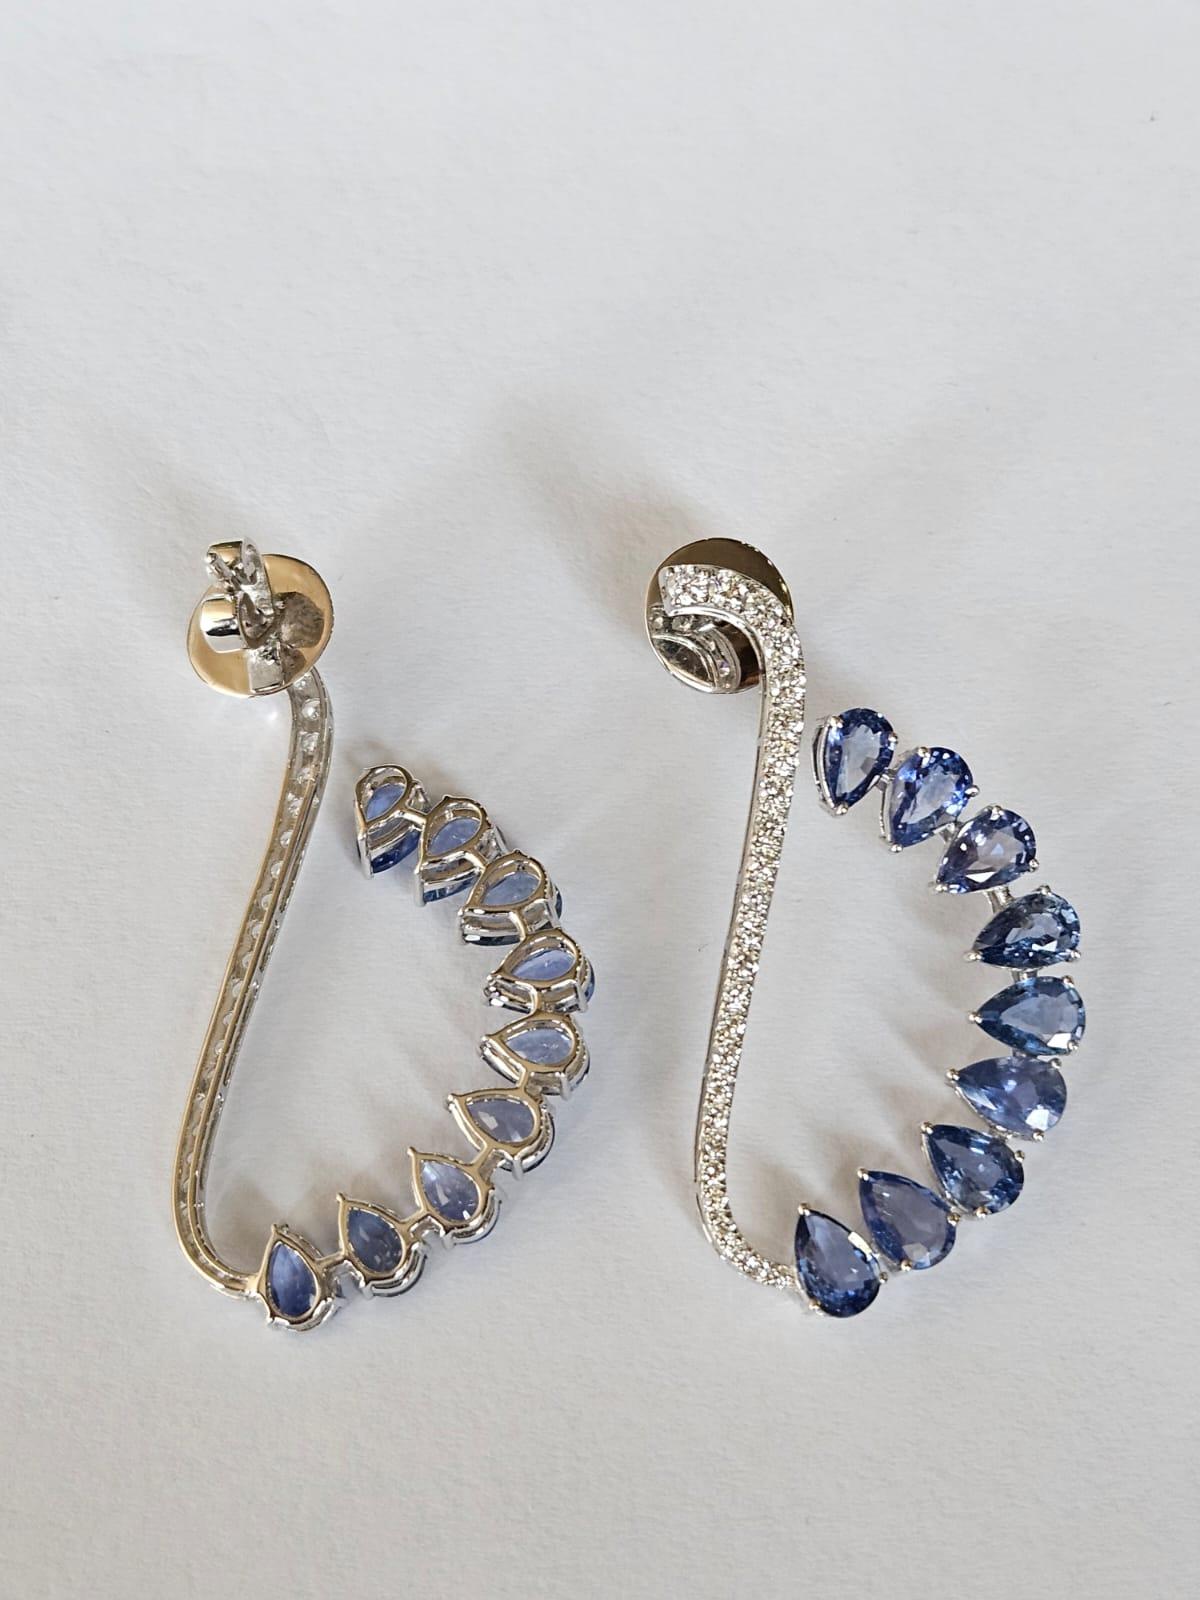 Modern Set in 18K Gold, Ceylon Blue Sapphire & Diamonds Dangle/ Chandelier Earrings For Sale